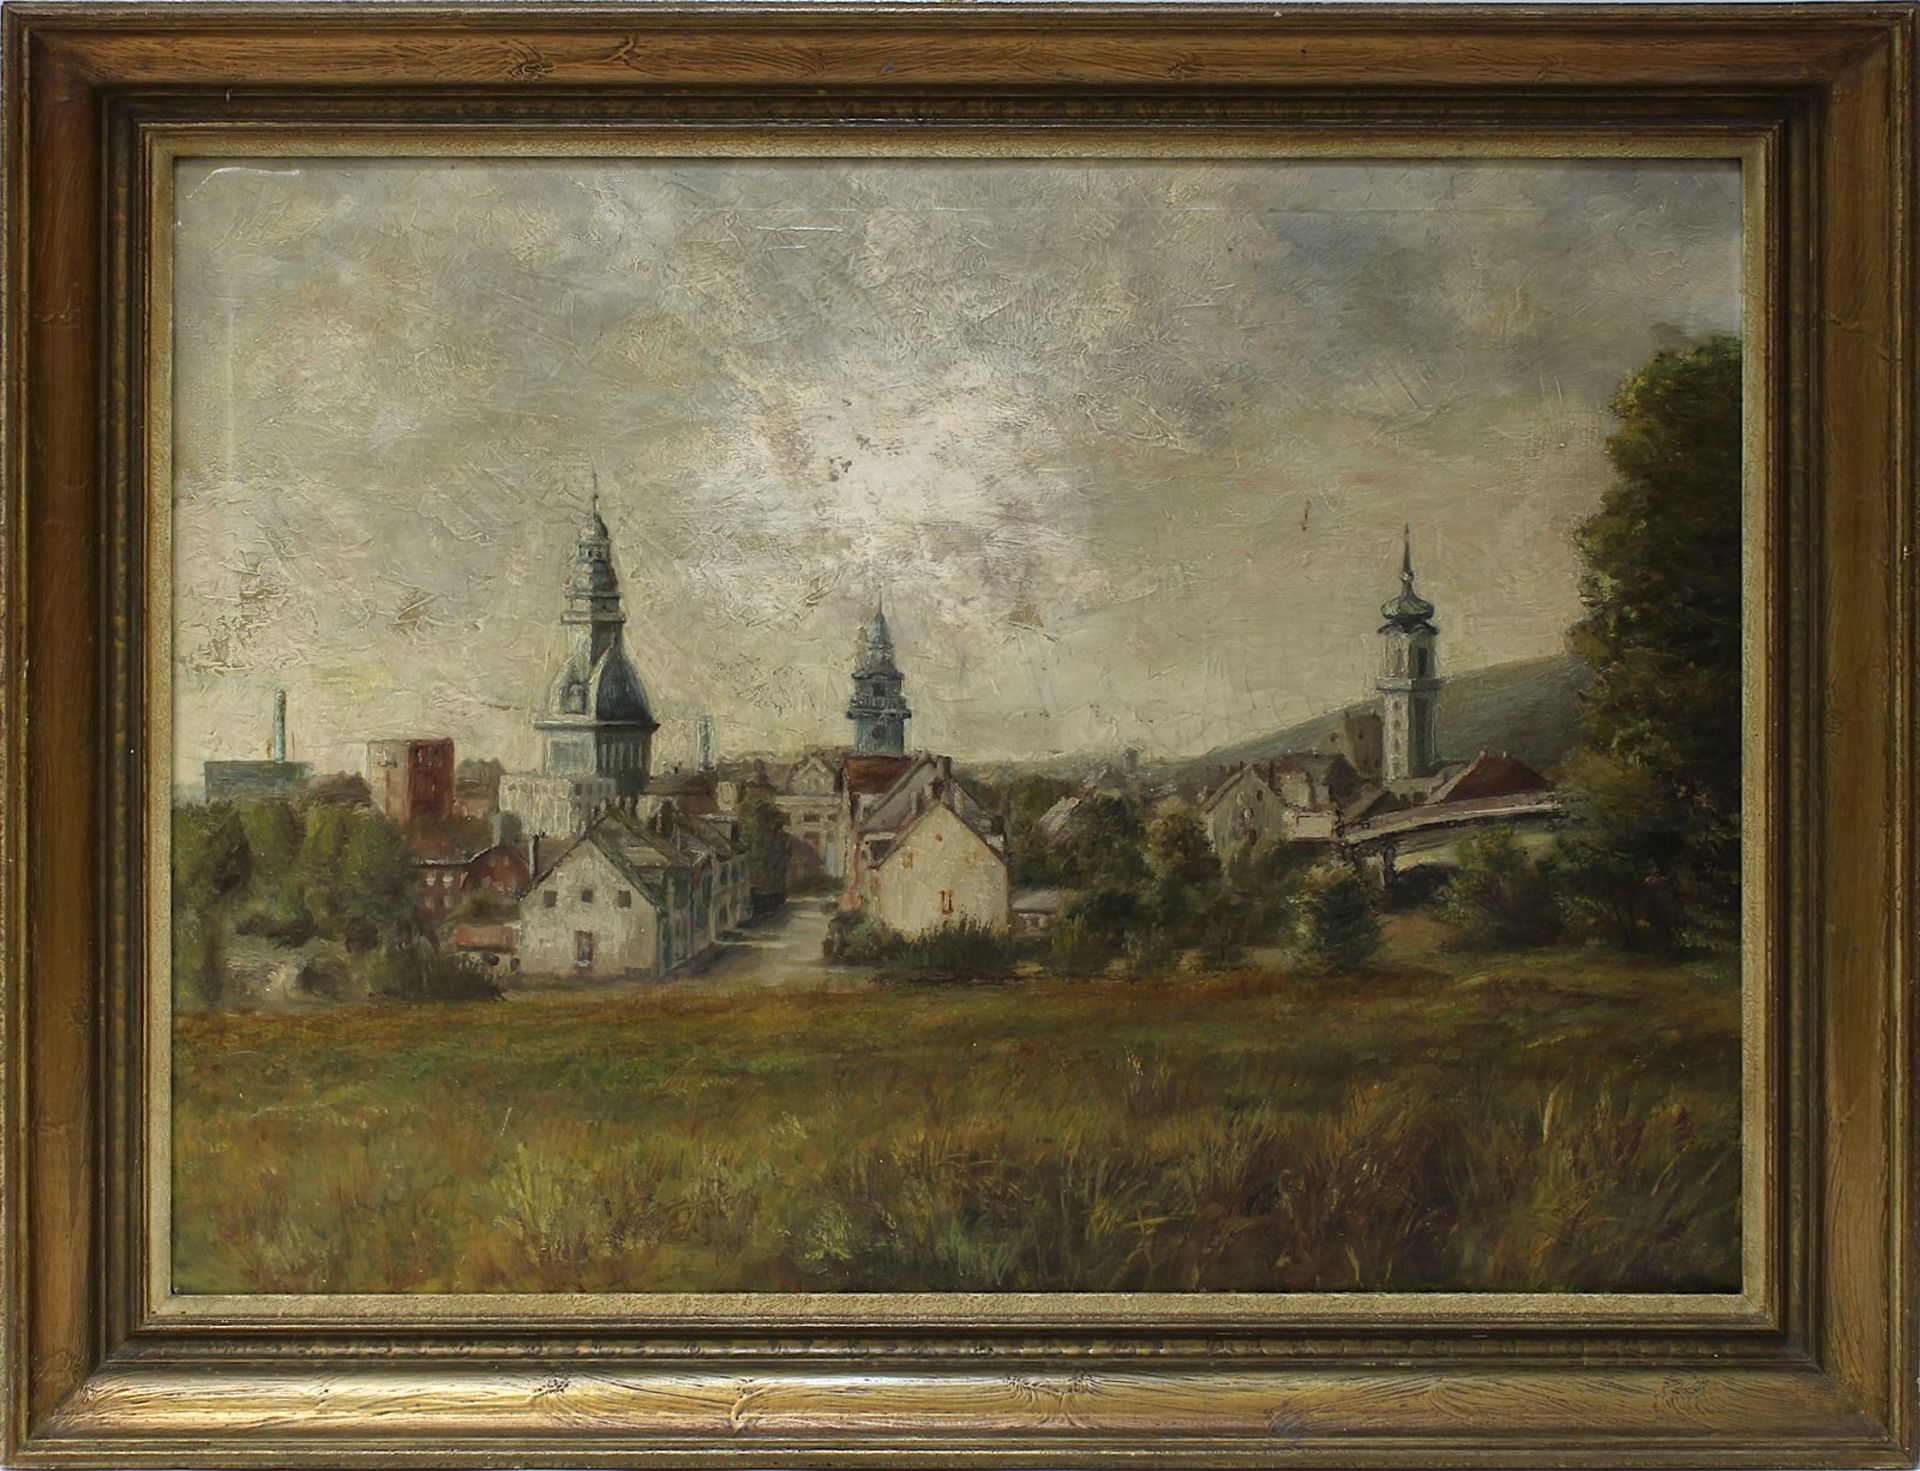 Saarländischer Künstler, Völklingen mit Kirchen, auf der rechten Seite Hüttenschornstein der